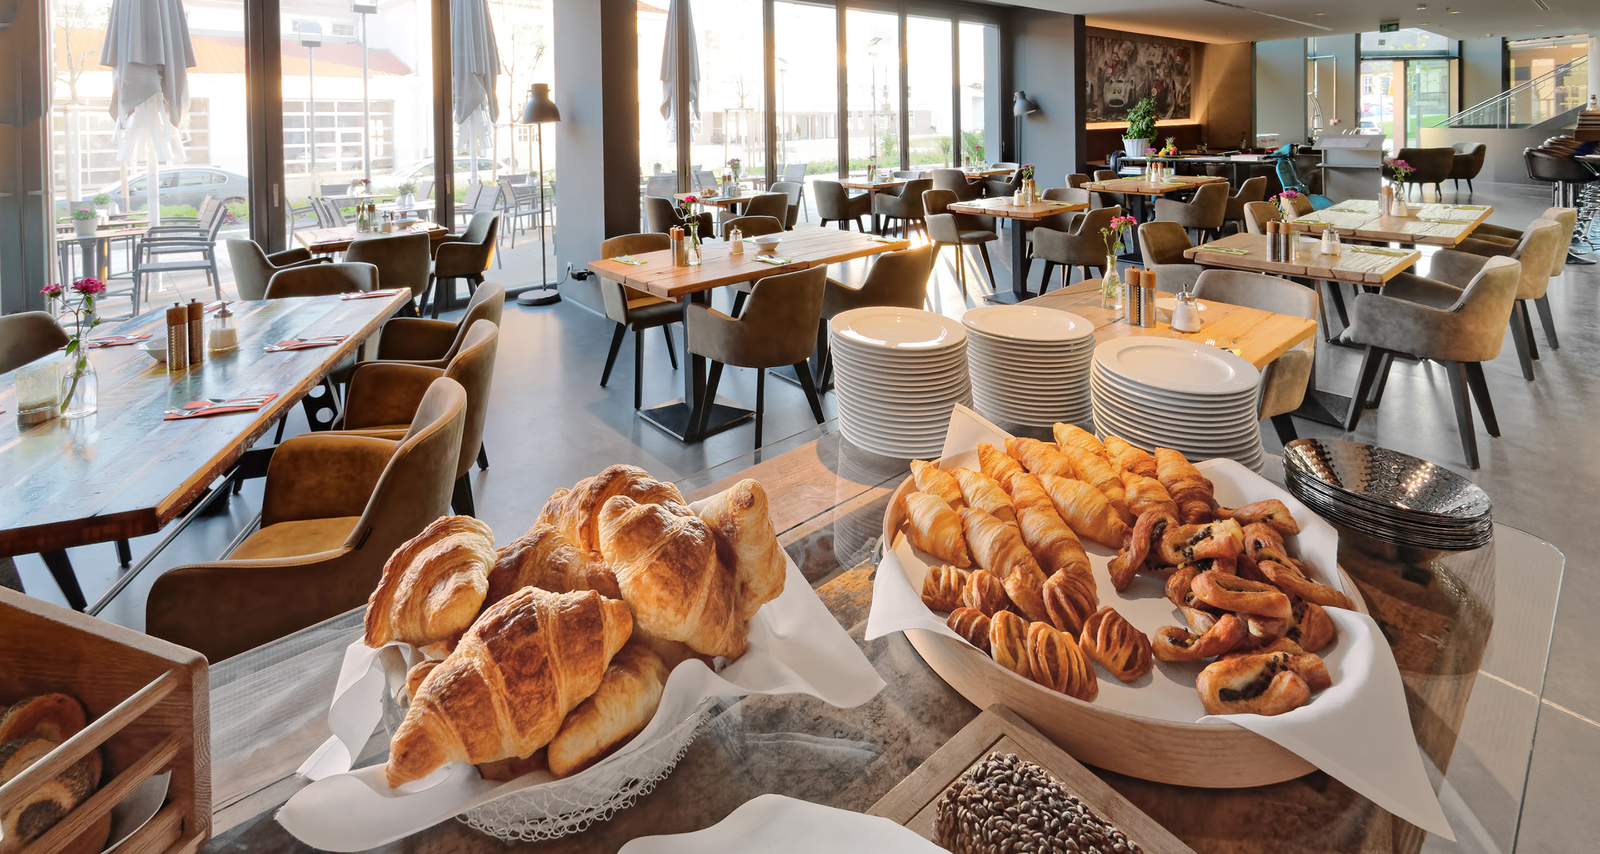 Blick vom Buffet mit leckeren Croissants und weiteren süßen Backwaren auf die Tische im hellen Restaurant Böblingen.